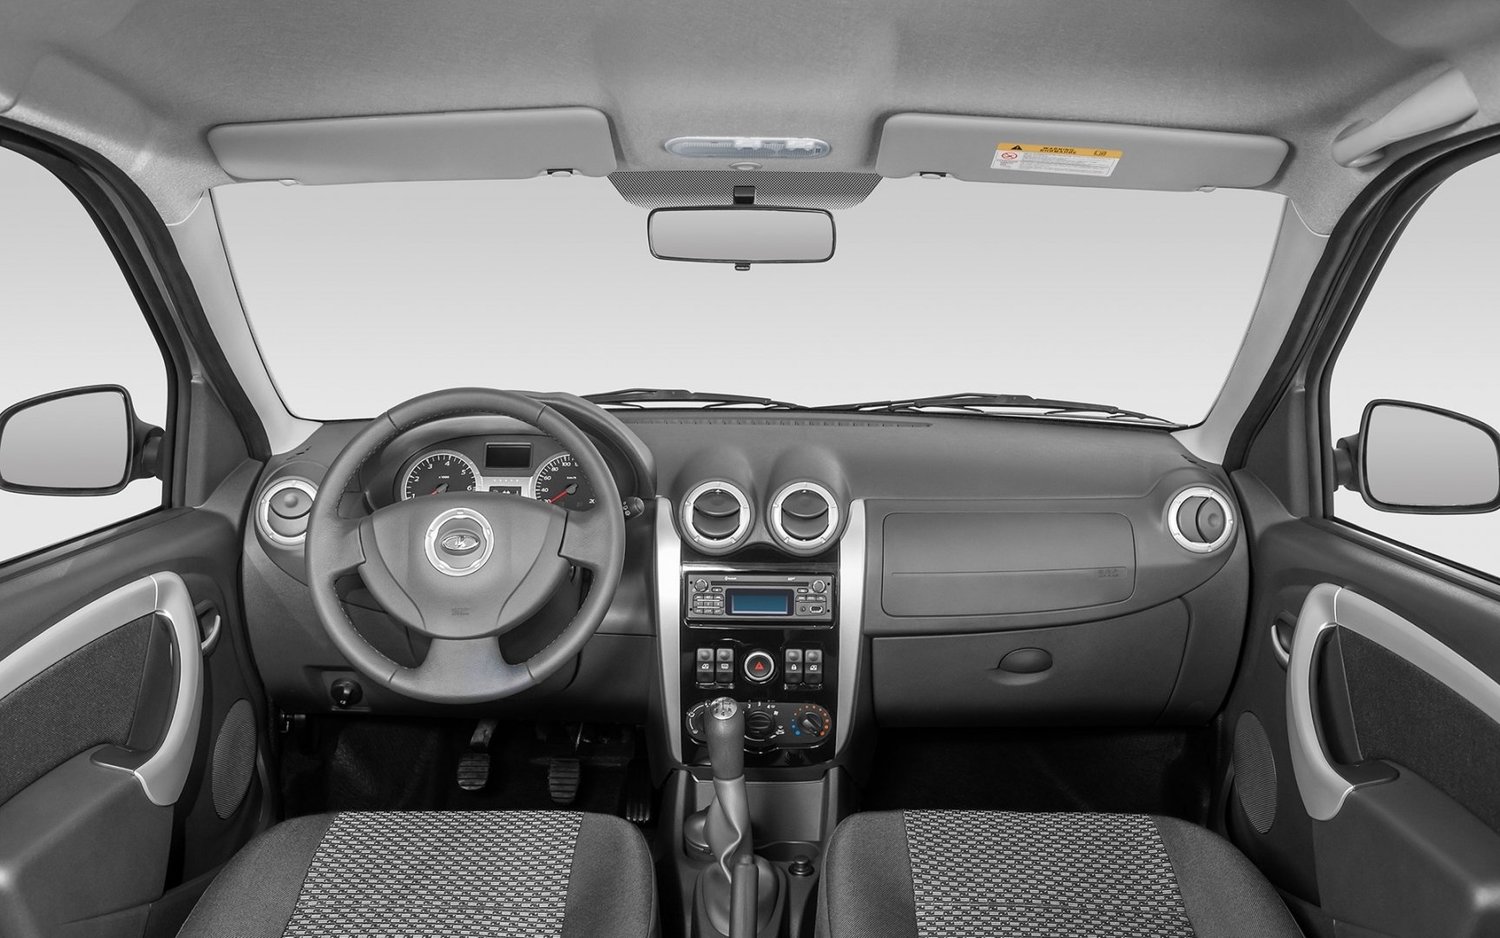 универсал ВАЗ (Lada) Largus 2012 - 2016г выпуска модификация 1.6 MT (105 л.с.)